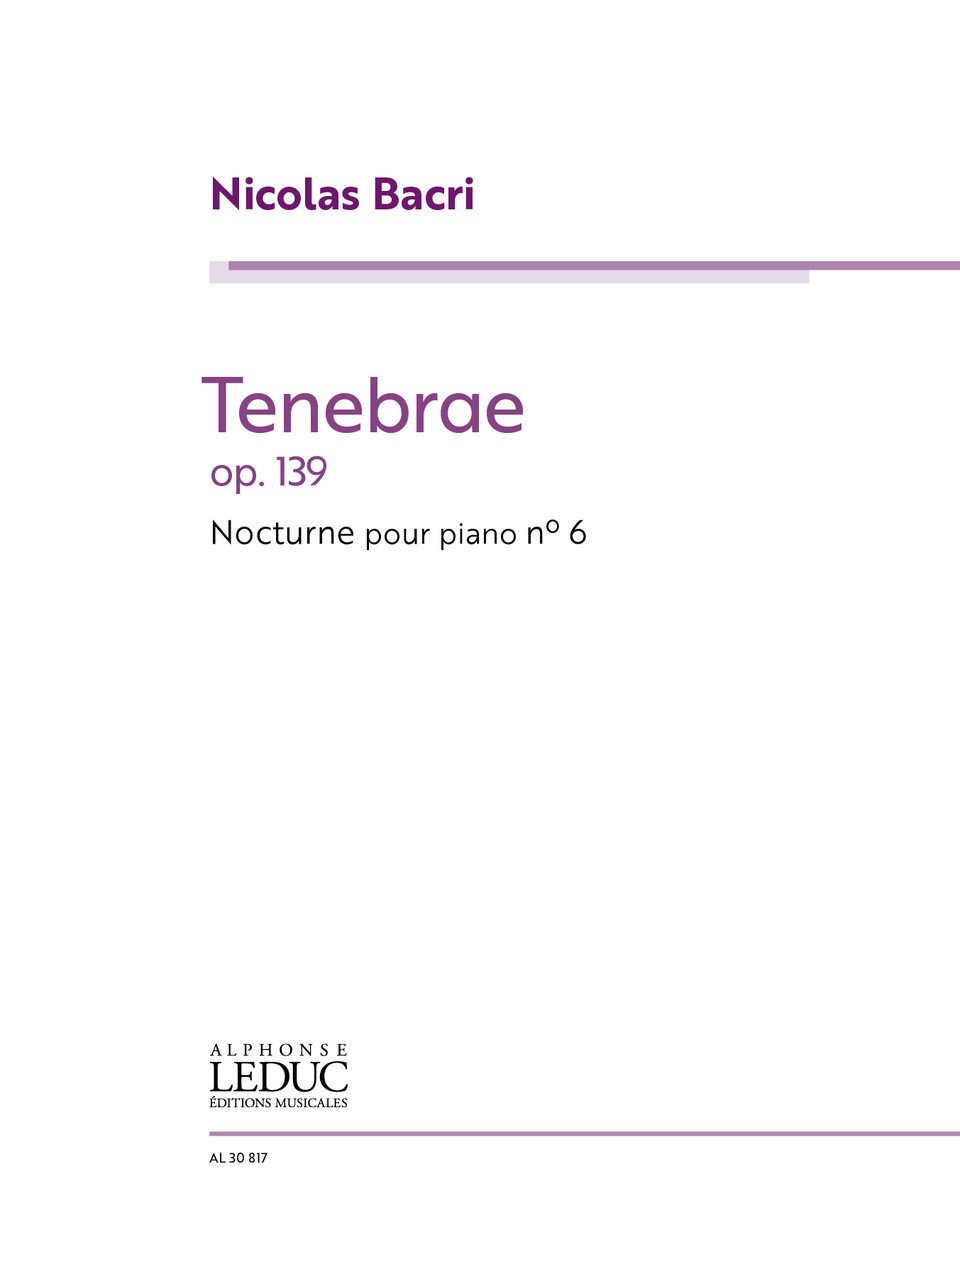 Nicolas Bacri: Tenebrae - Nocturne No.6 Op.139: Piano: Instrumental Work